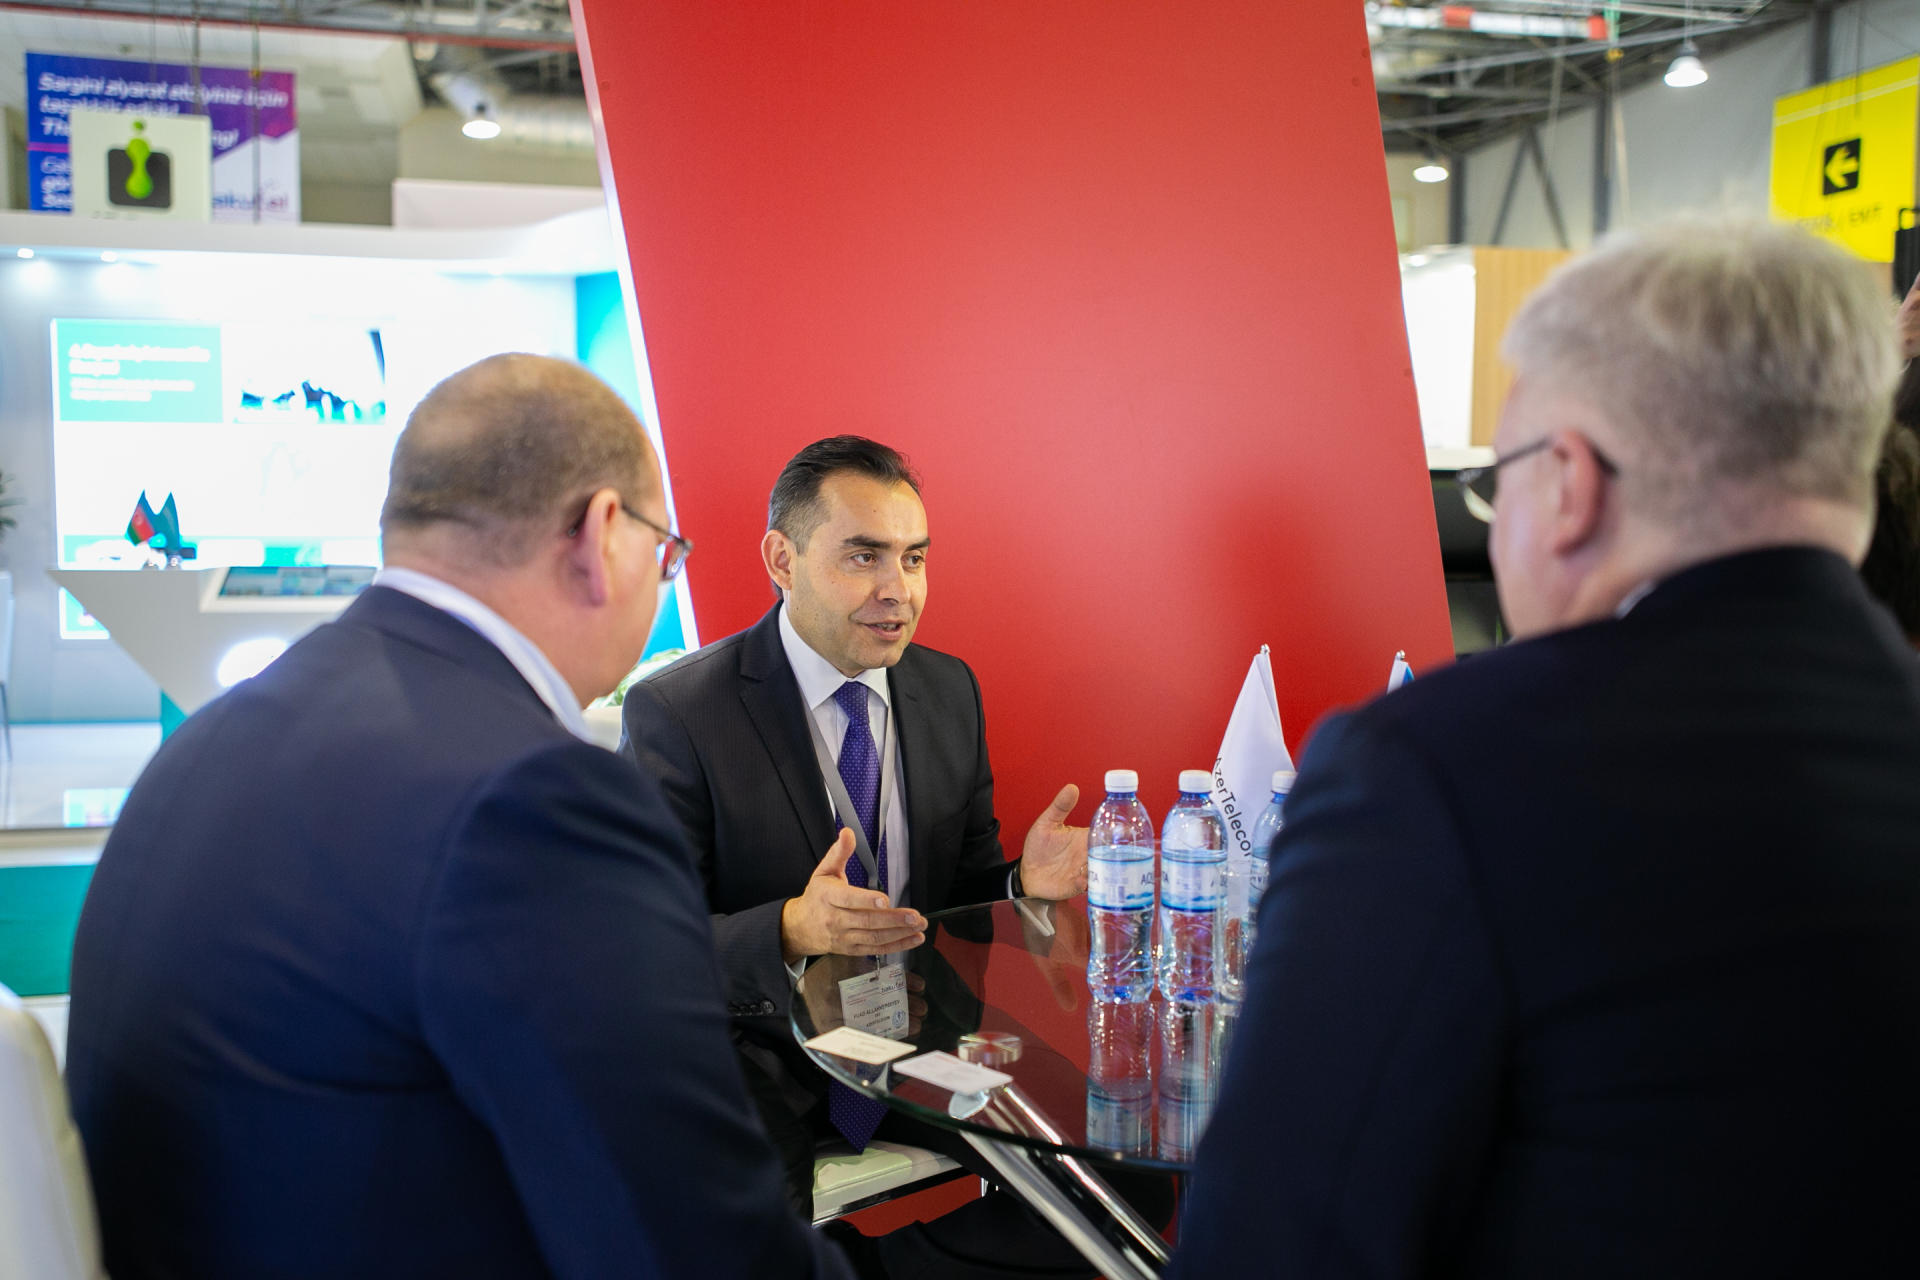 AzerTelecom представляет программу Azerbaijan Digital Hub на выставке Baku Tel (ФОТО)